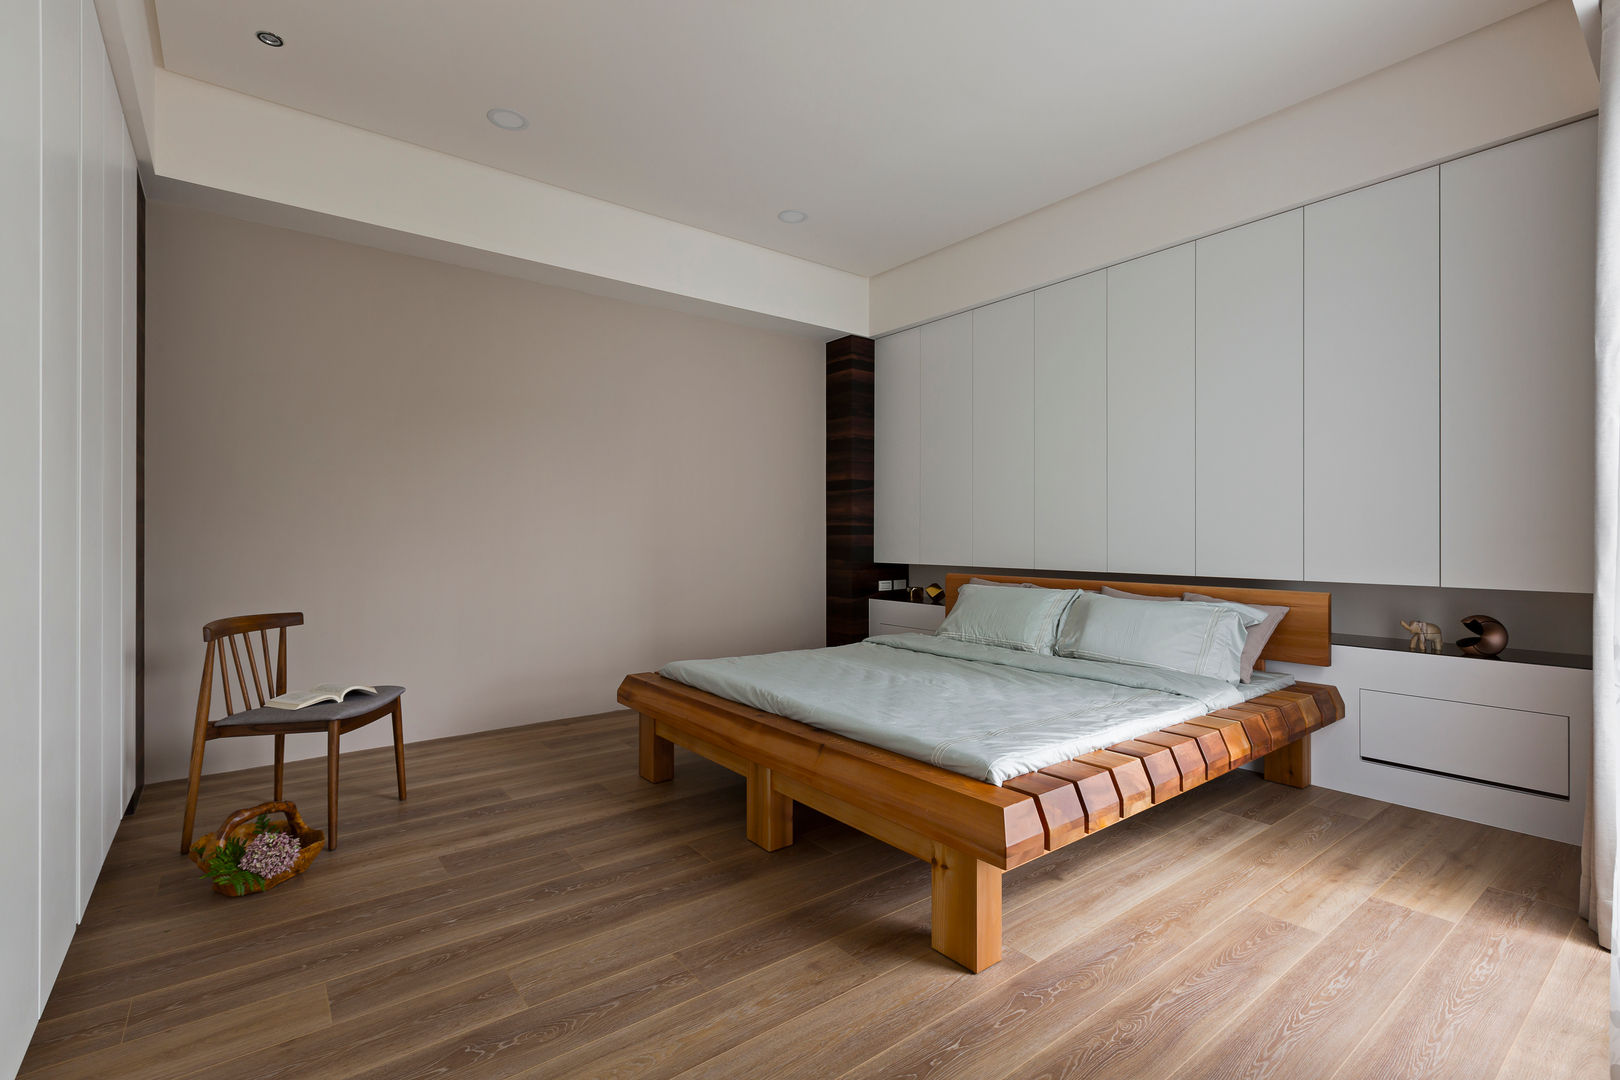 賀澤室內設計 HOZO_interior_design homify Asian style bedroom